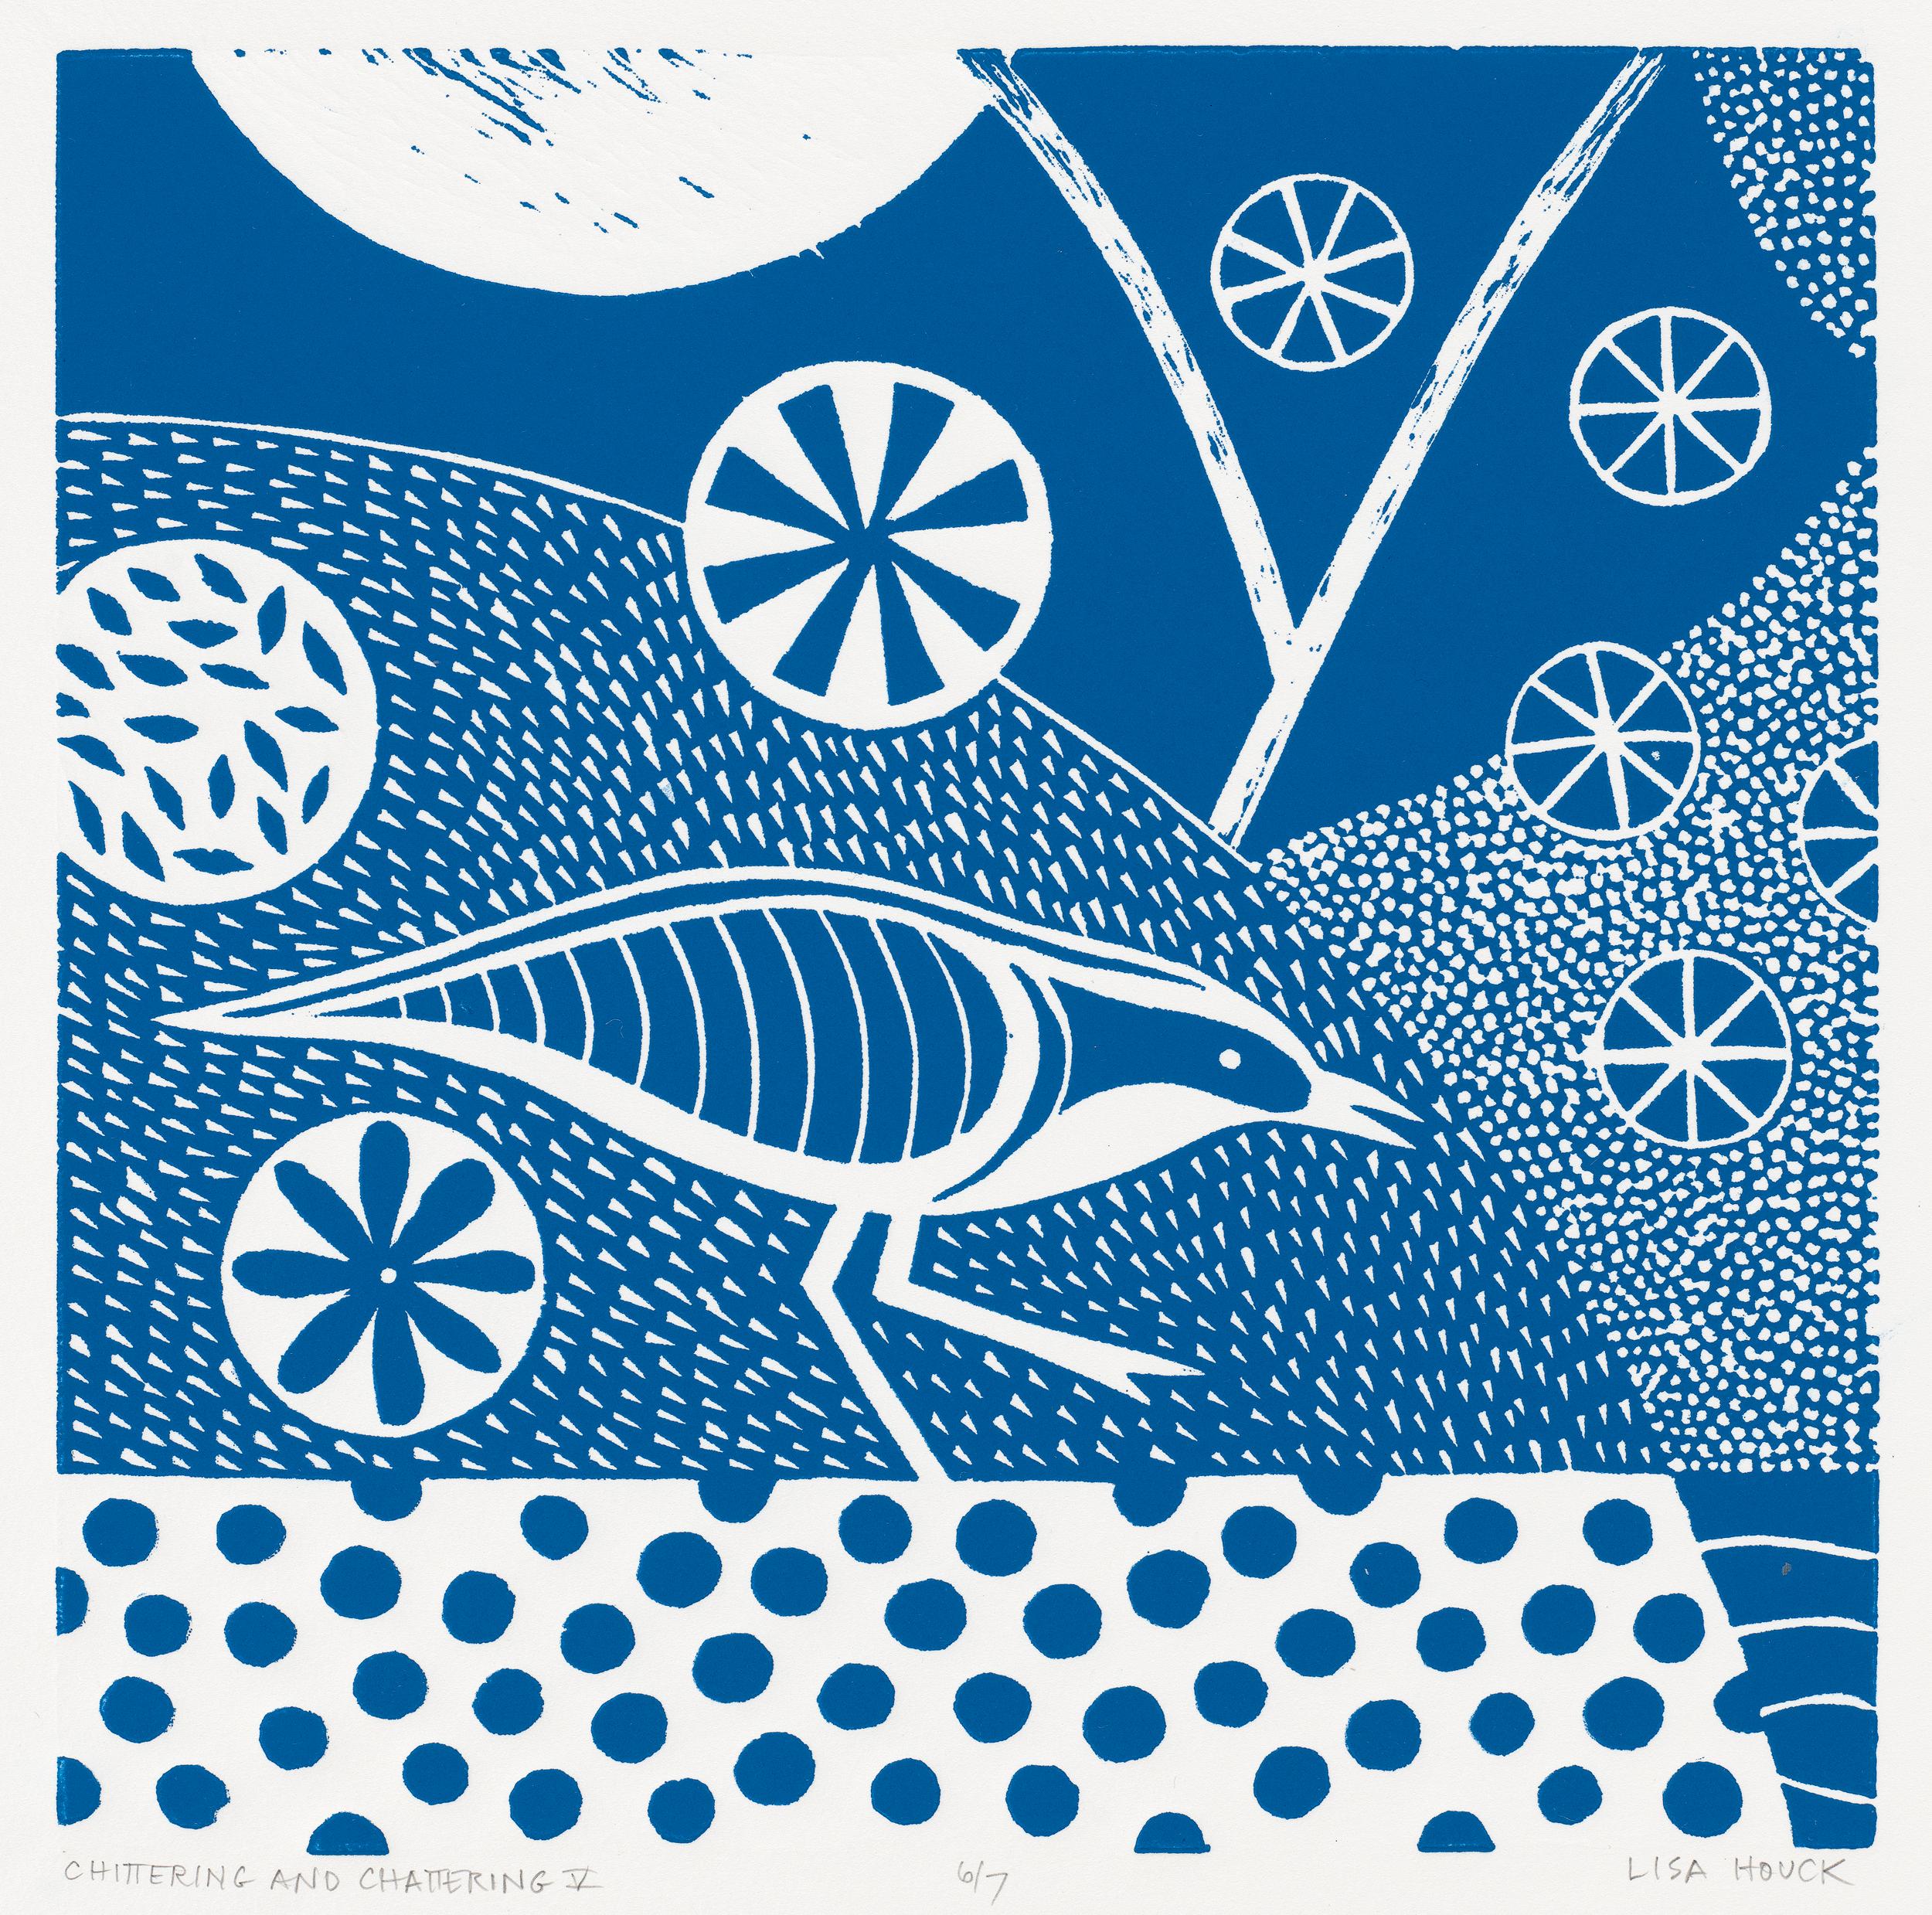 Lisa Houck Animal Print – Chittering & Chattering V  Folk inspirierte Vogelserie im Linolschliff in Blau und Weiß